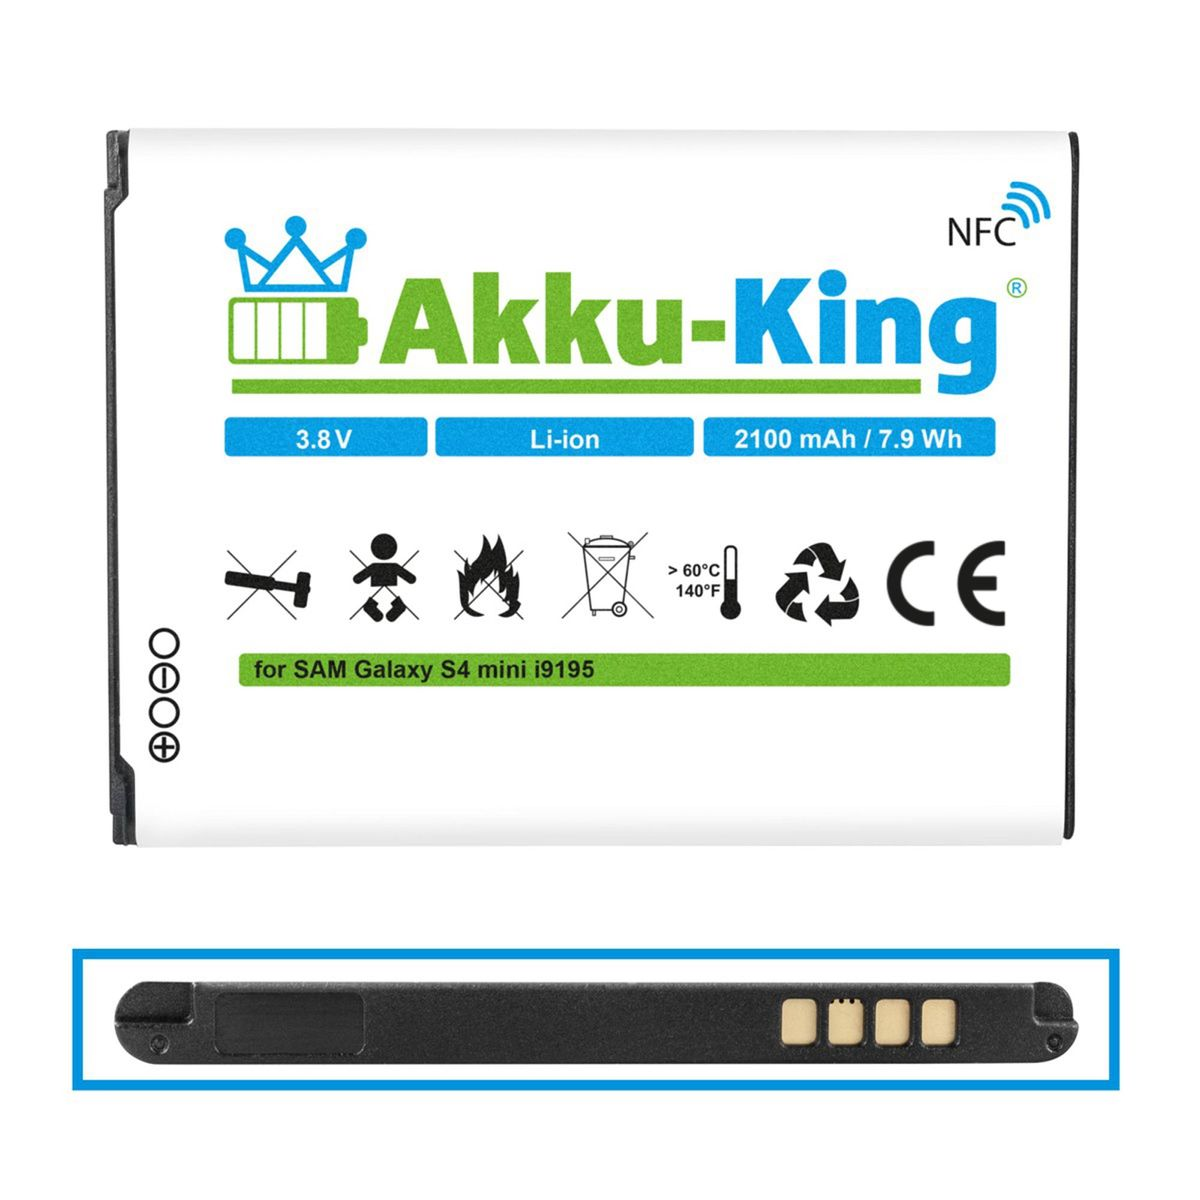 EB-B500BE 3.8 AKKU-KING Li-Ion kompatibel Volt, mit Samsung Akku Handy-Akku, NFC 2100mAh